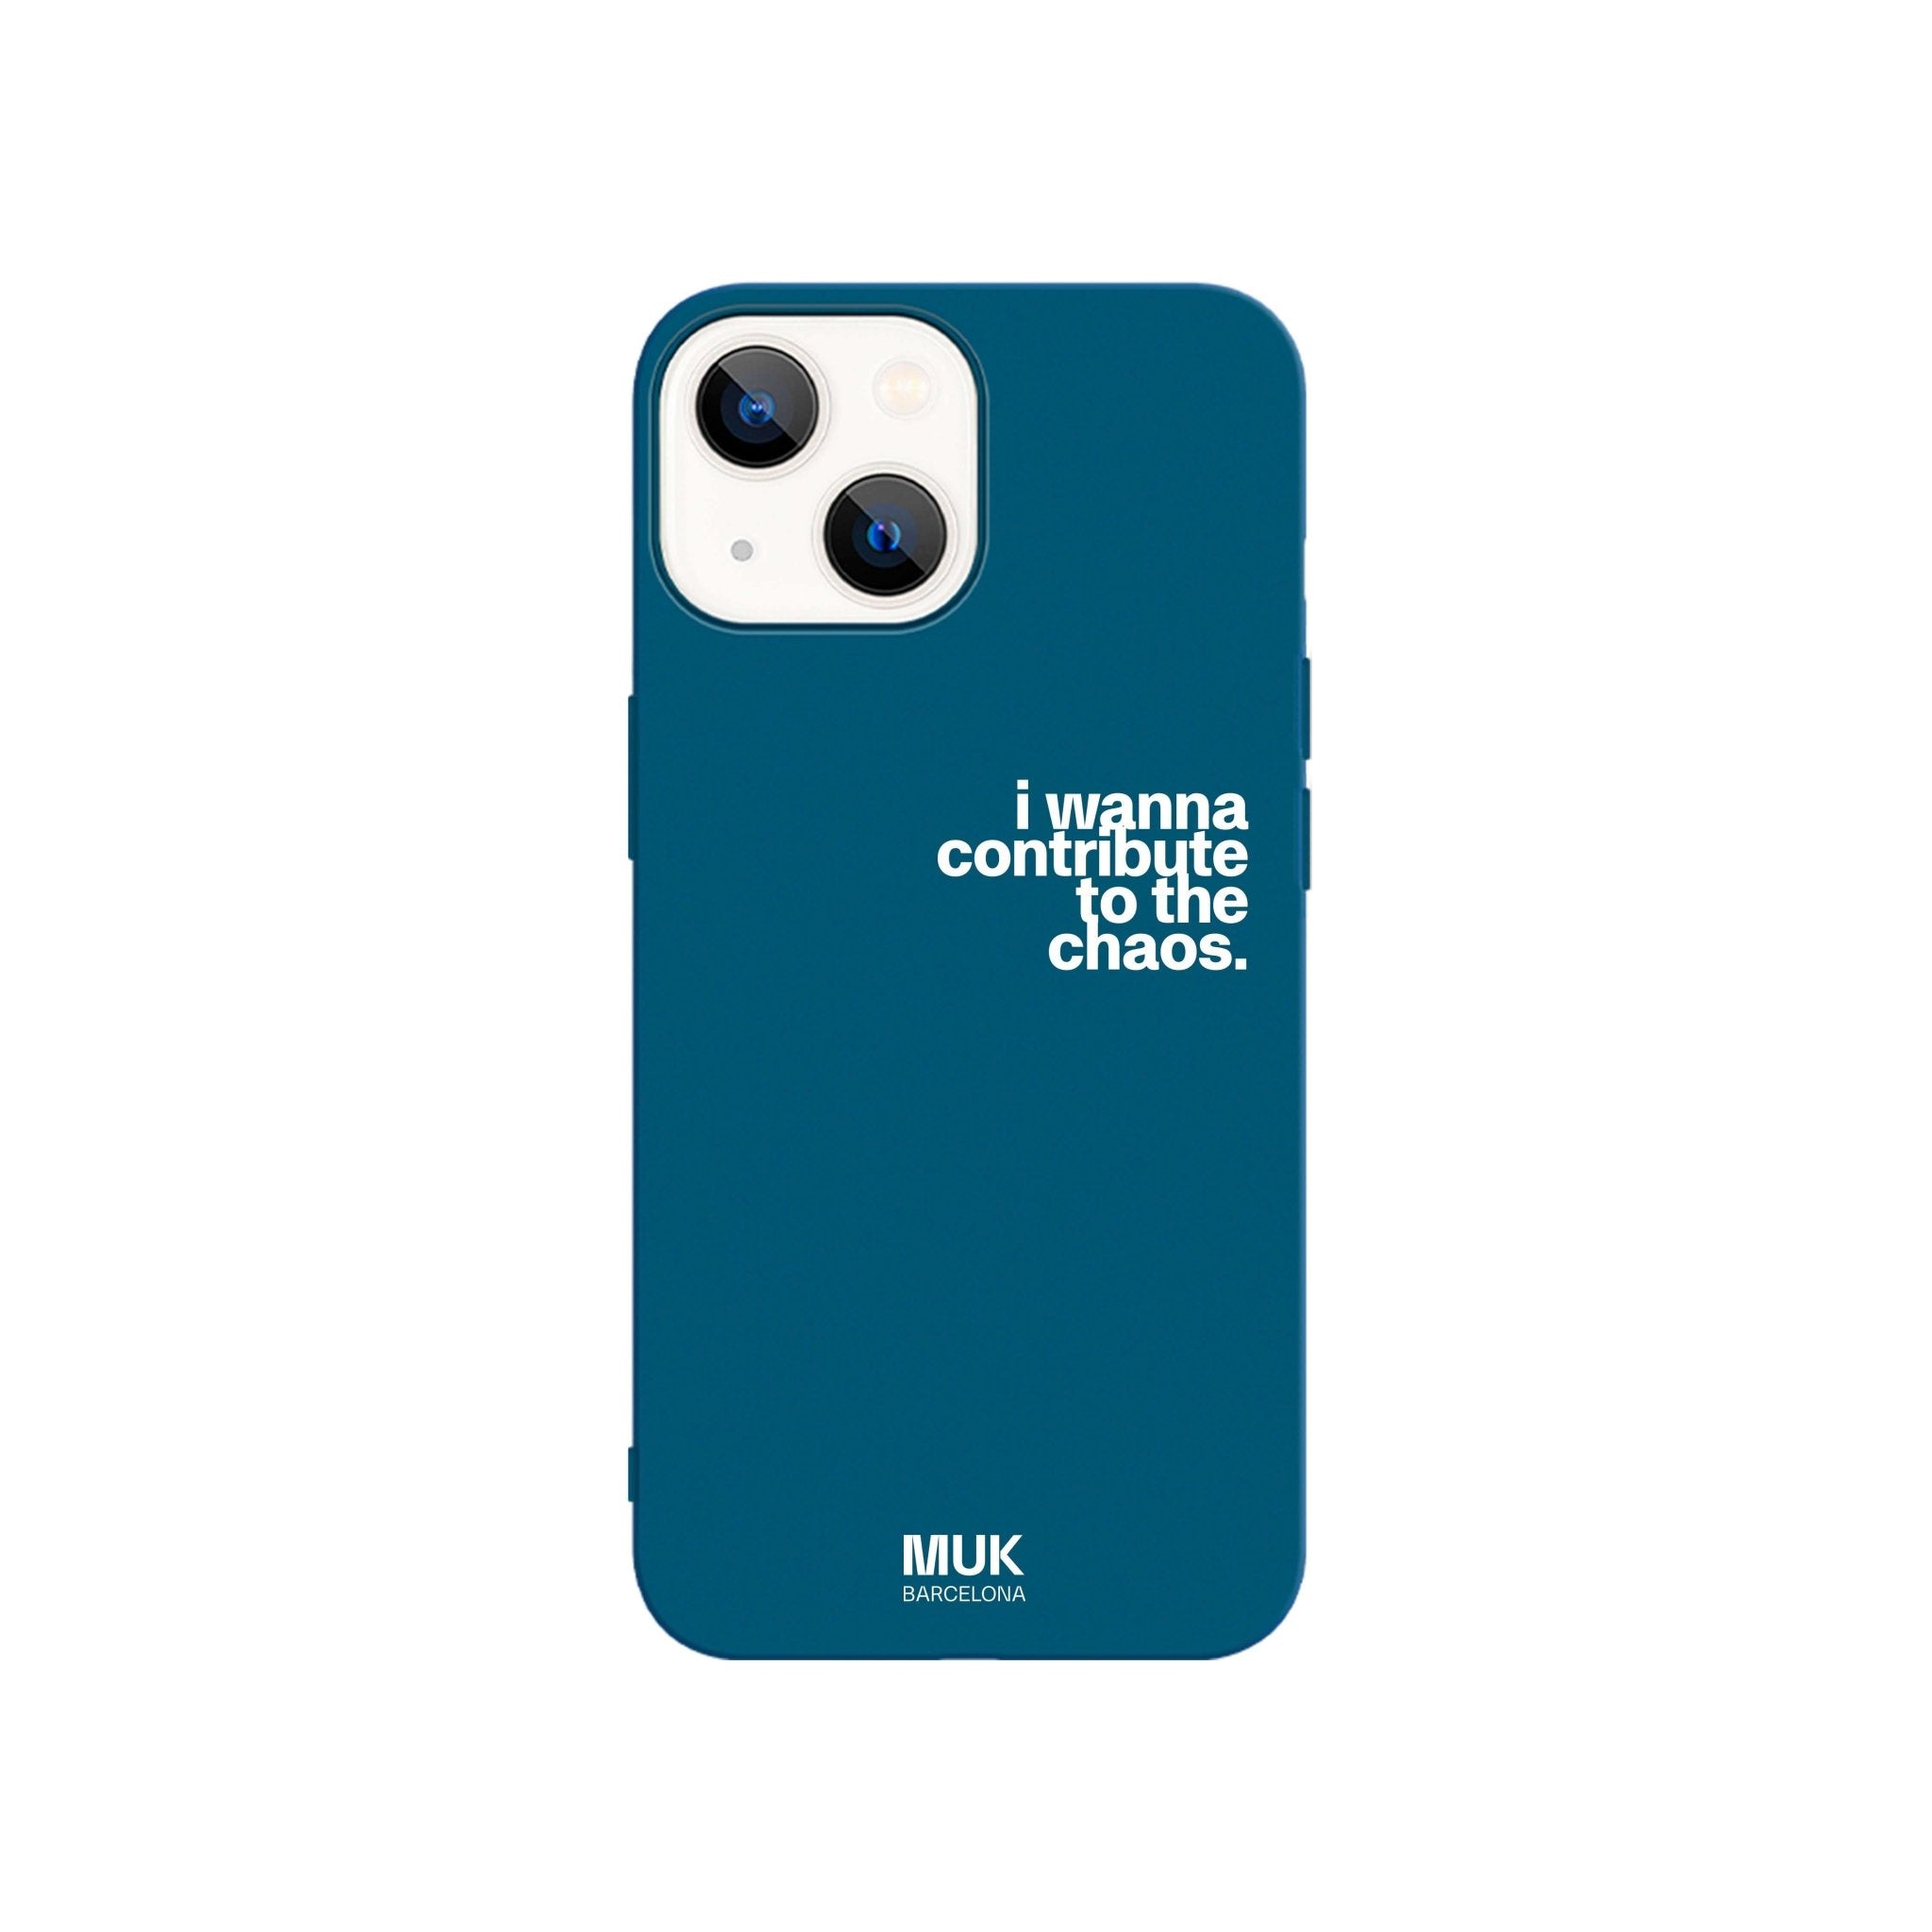 Funda de móvil TPU azul con frase "I wanna contribute to the chaos" en color blanco.
